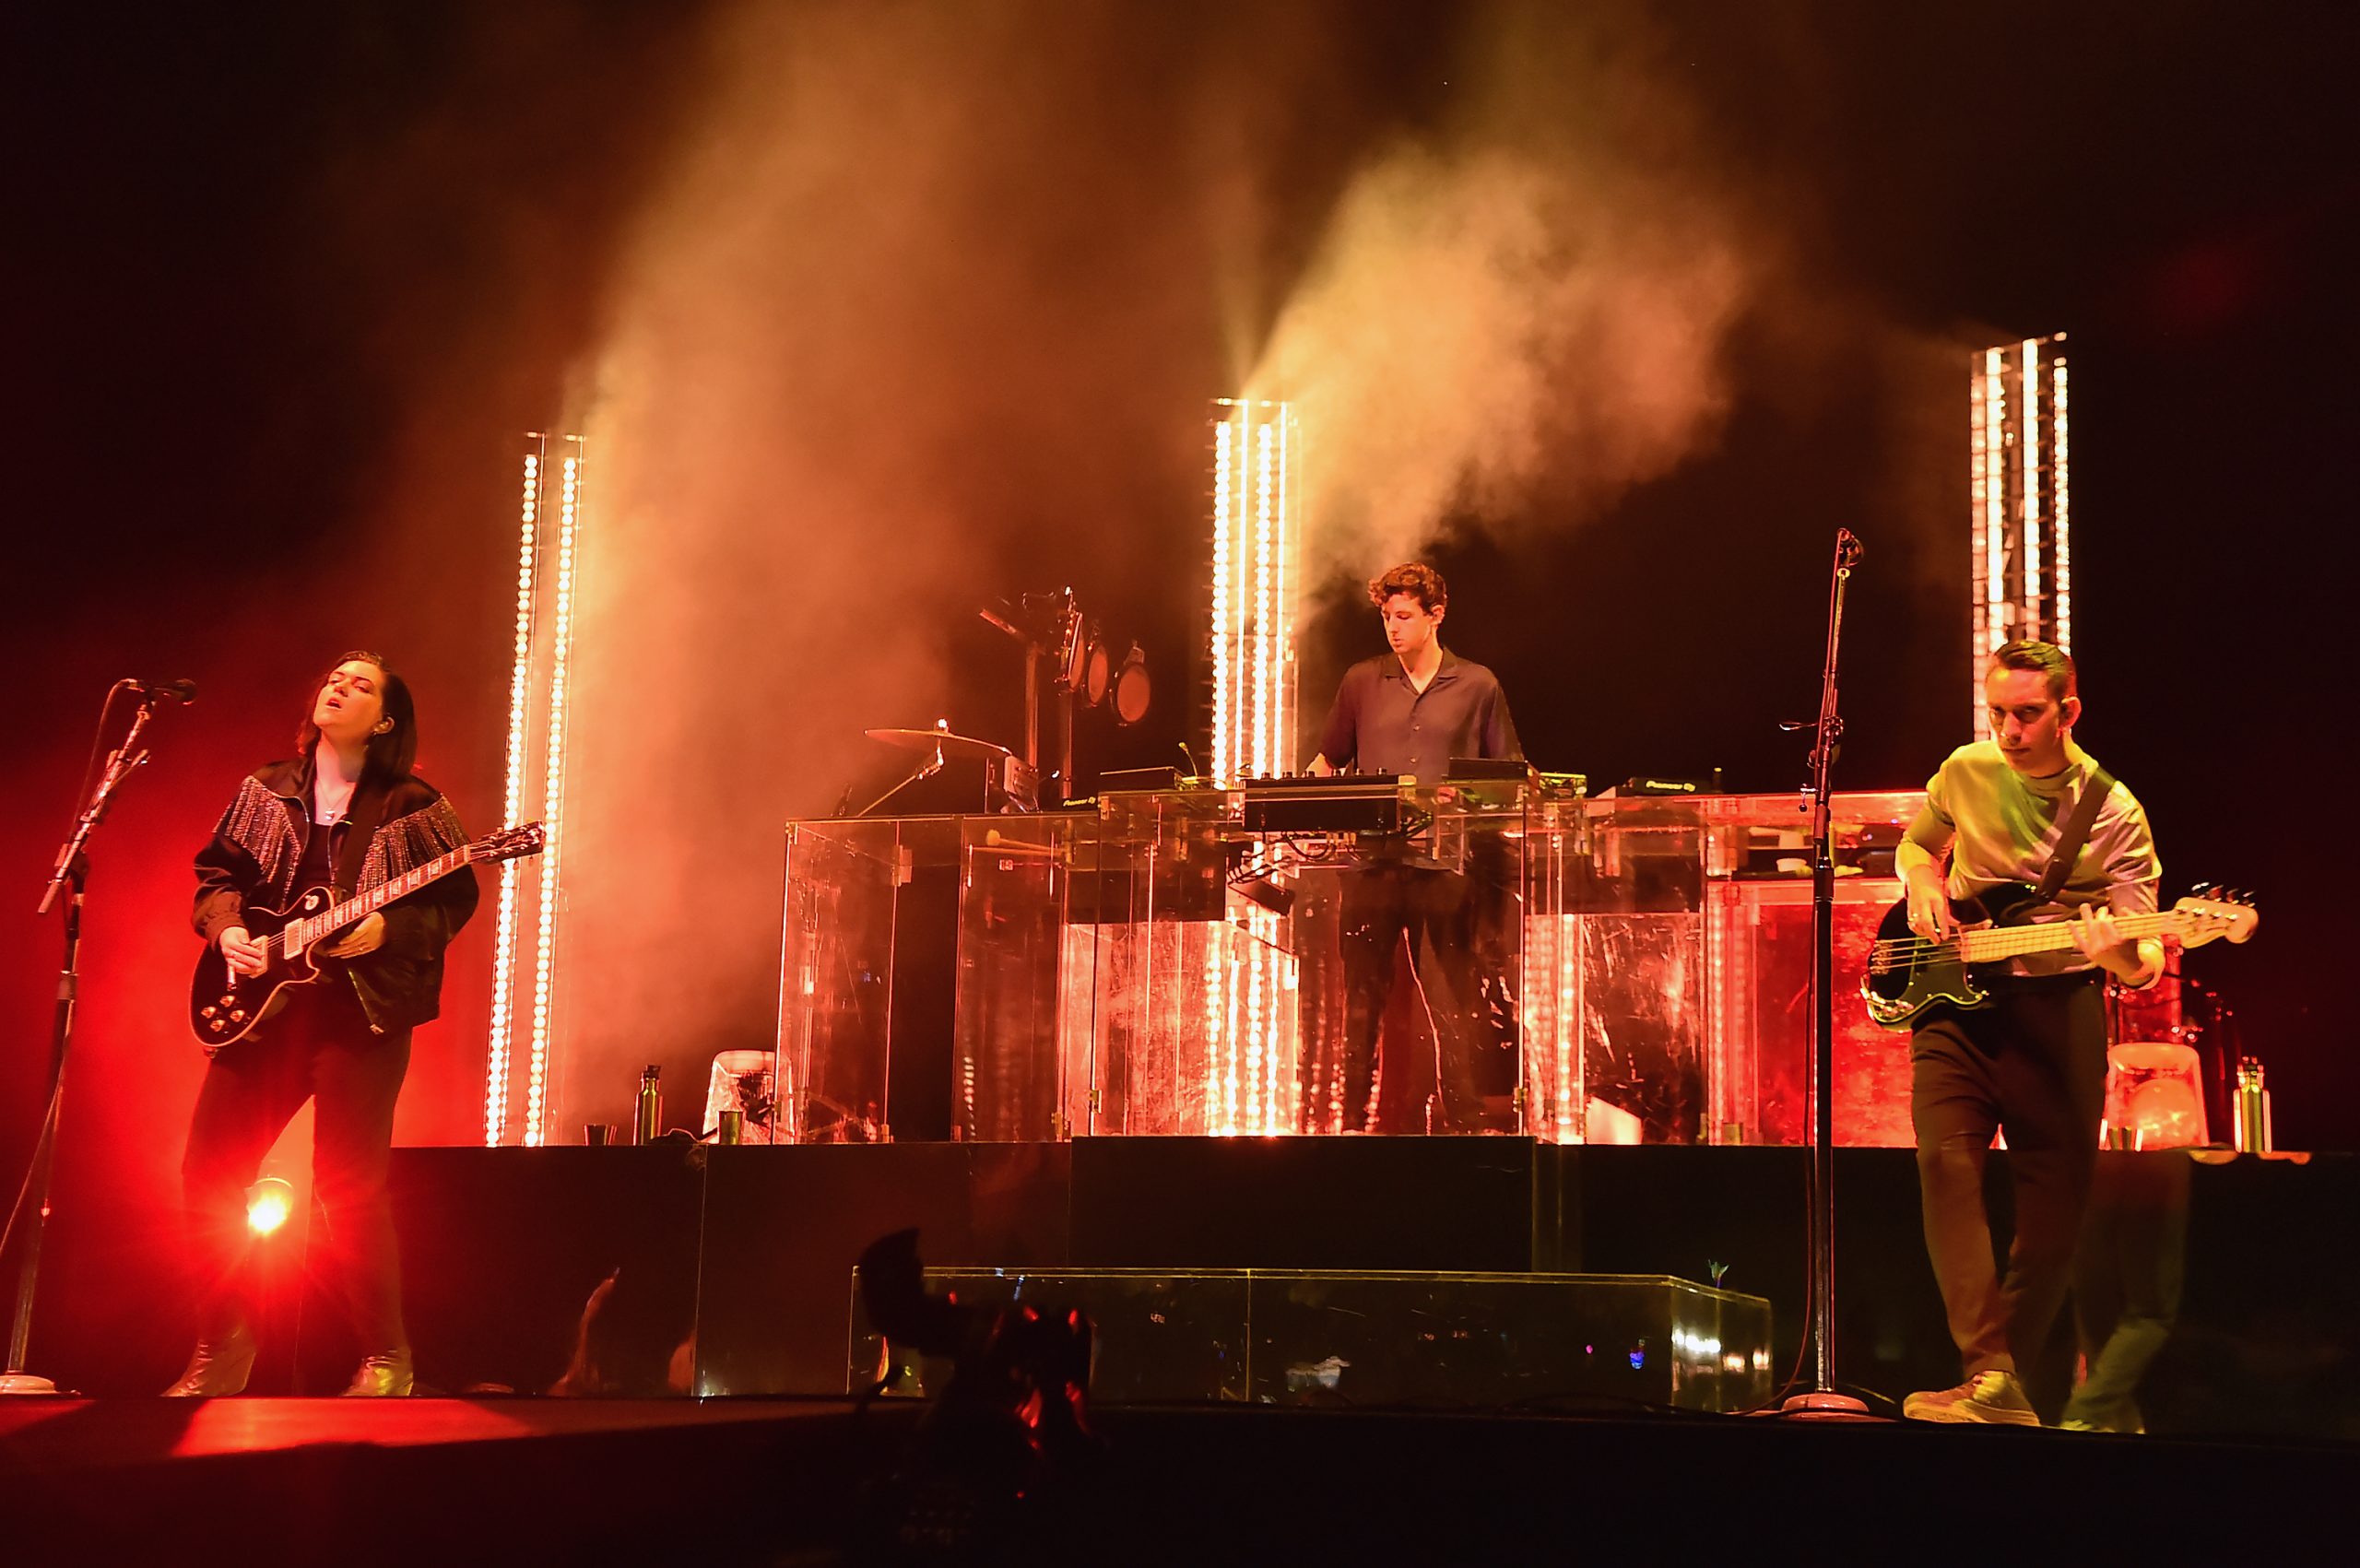 Ahí pa'l otro año: Los integrantes de The xx están grabando música... pero en solitario